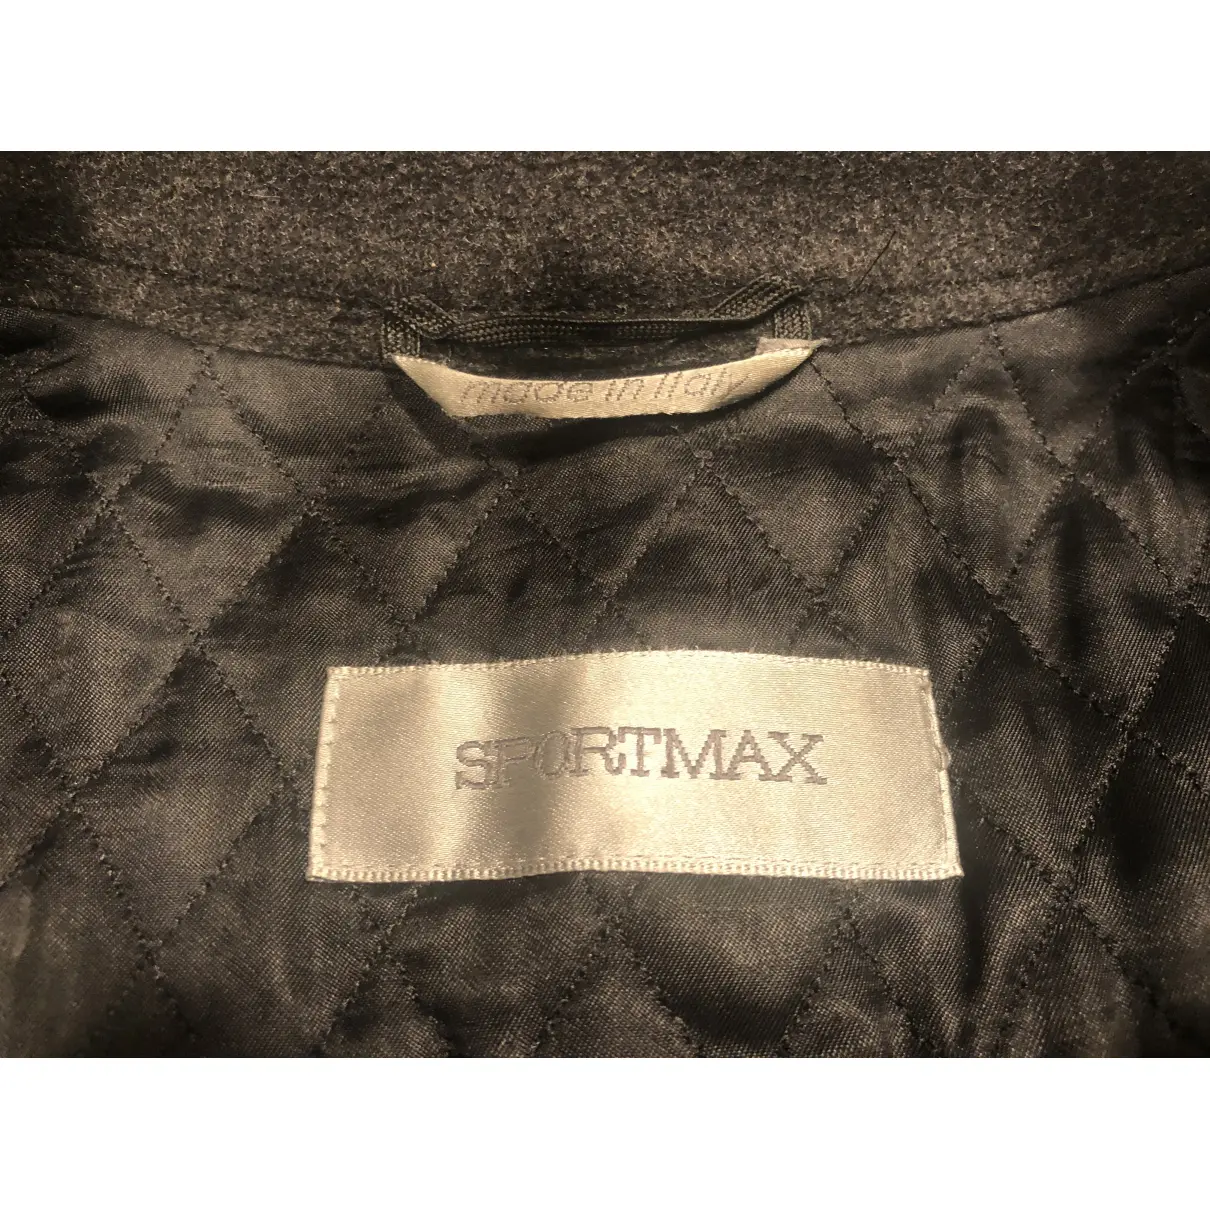 Luxury Sportmax Coats Women